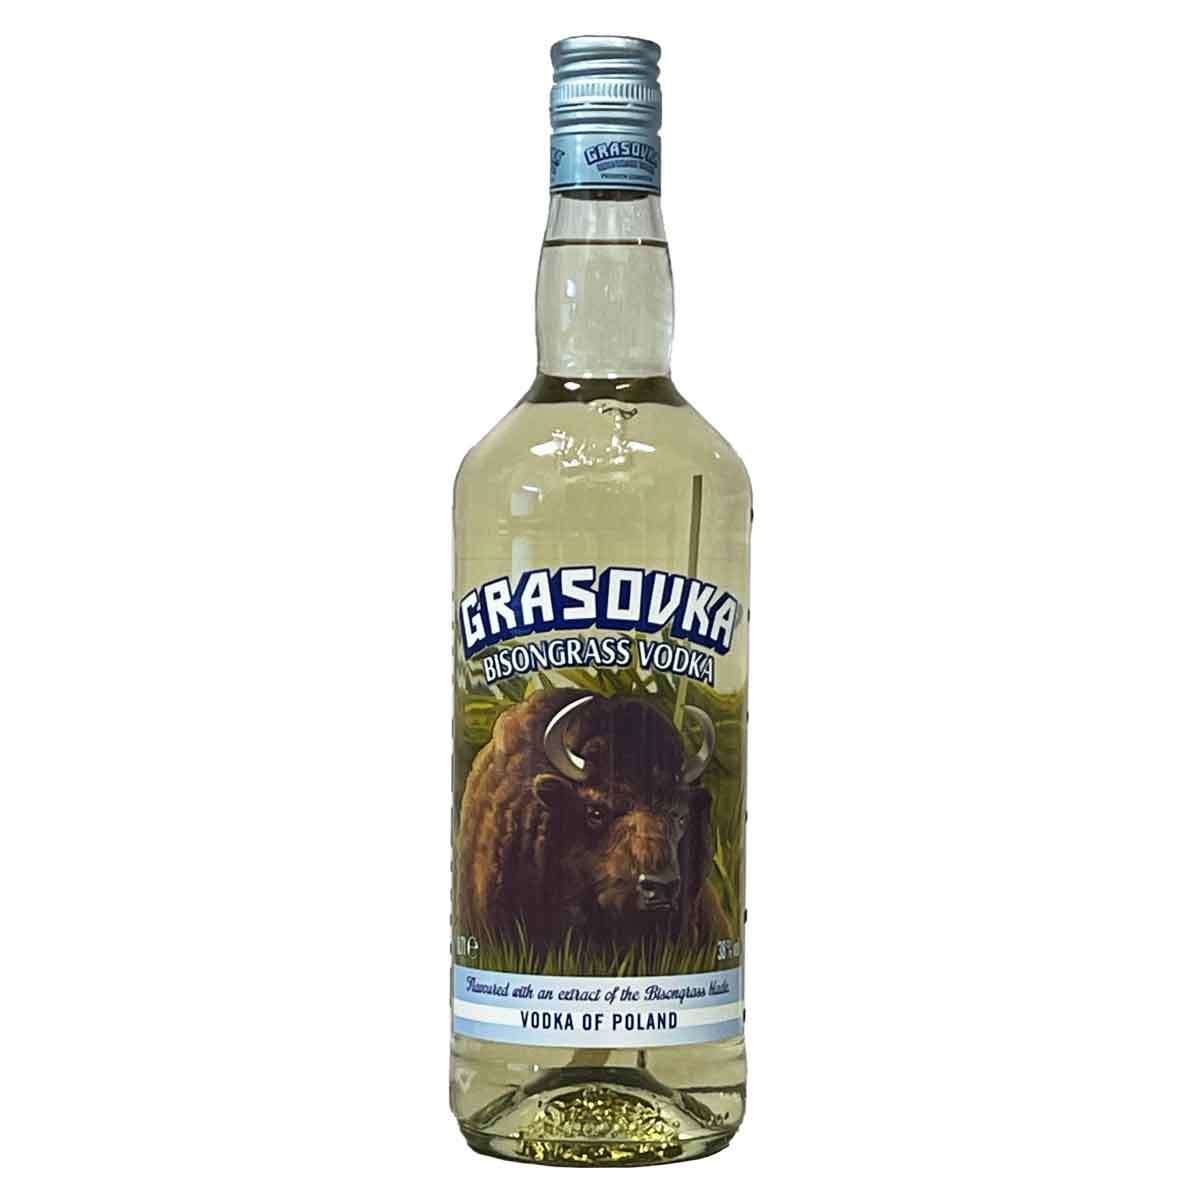 Grasovka Bisongrass Vodka 38% (0,7l) | Viel-Durst